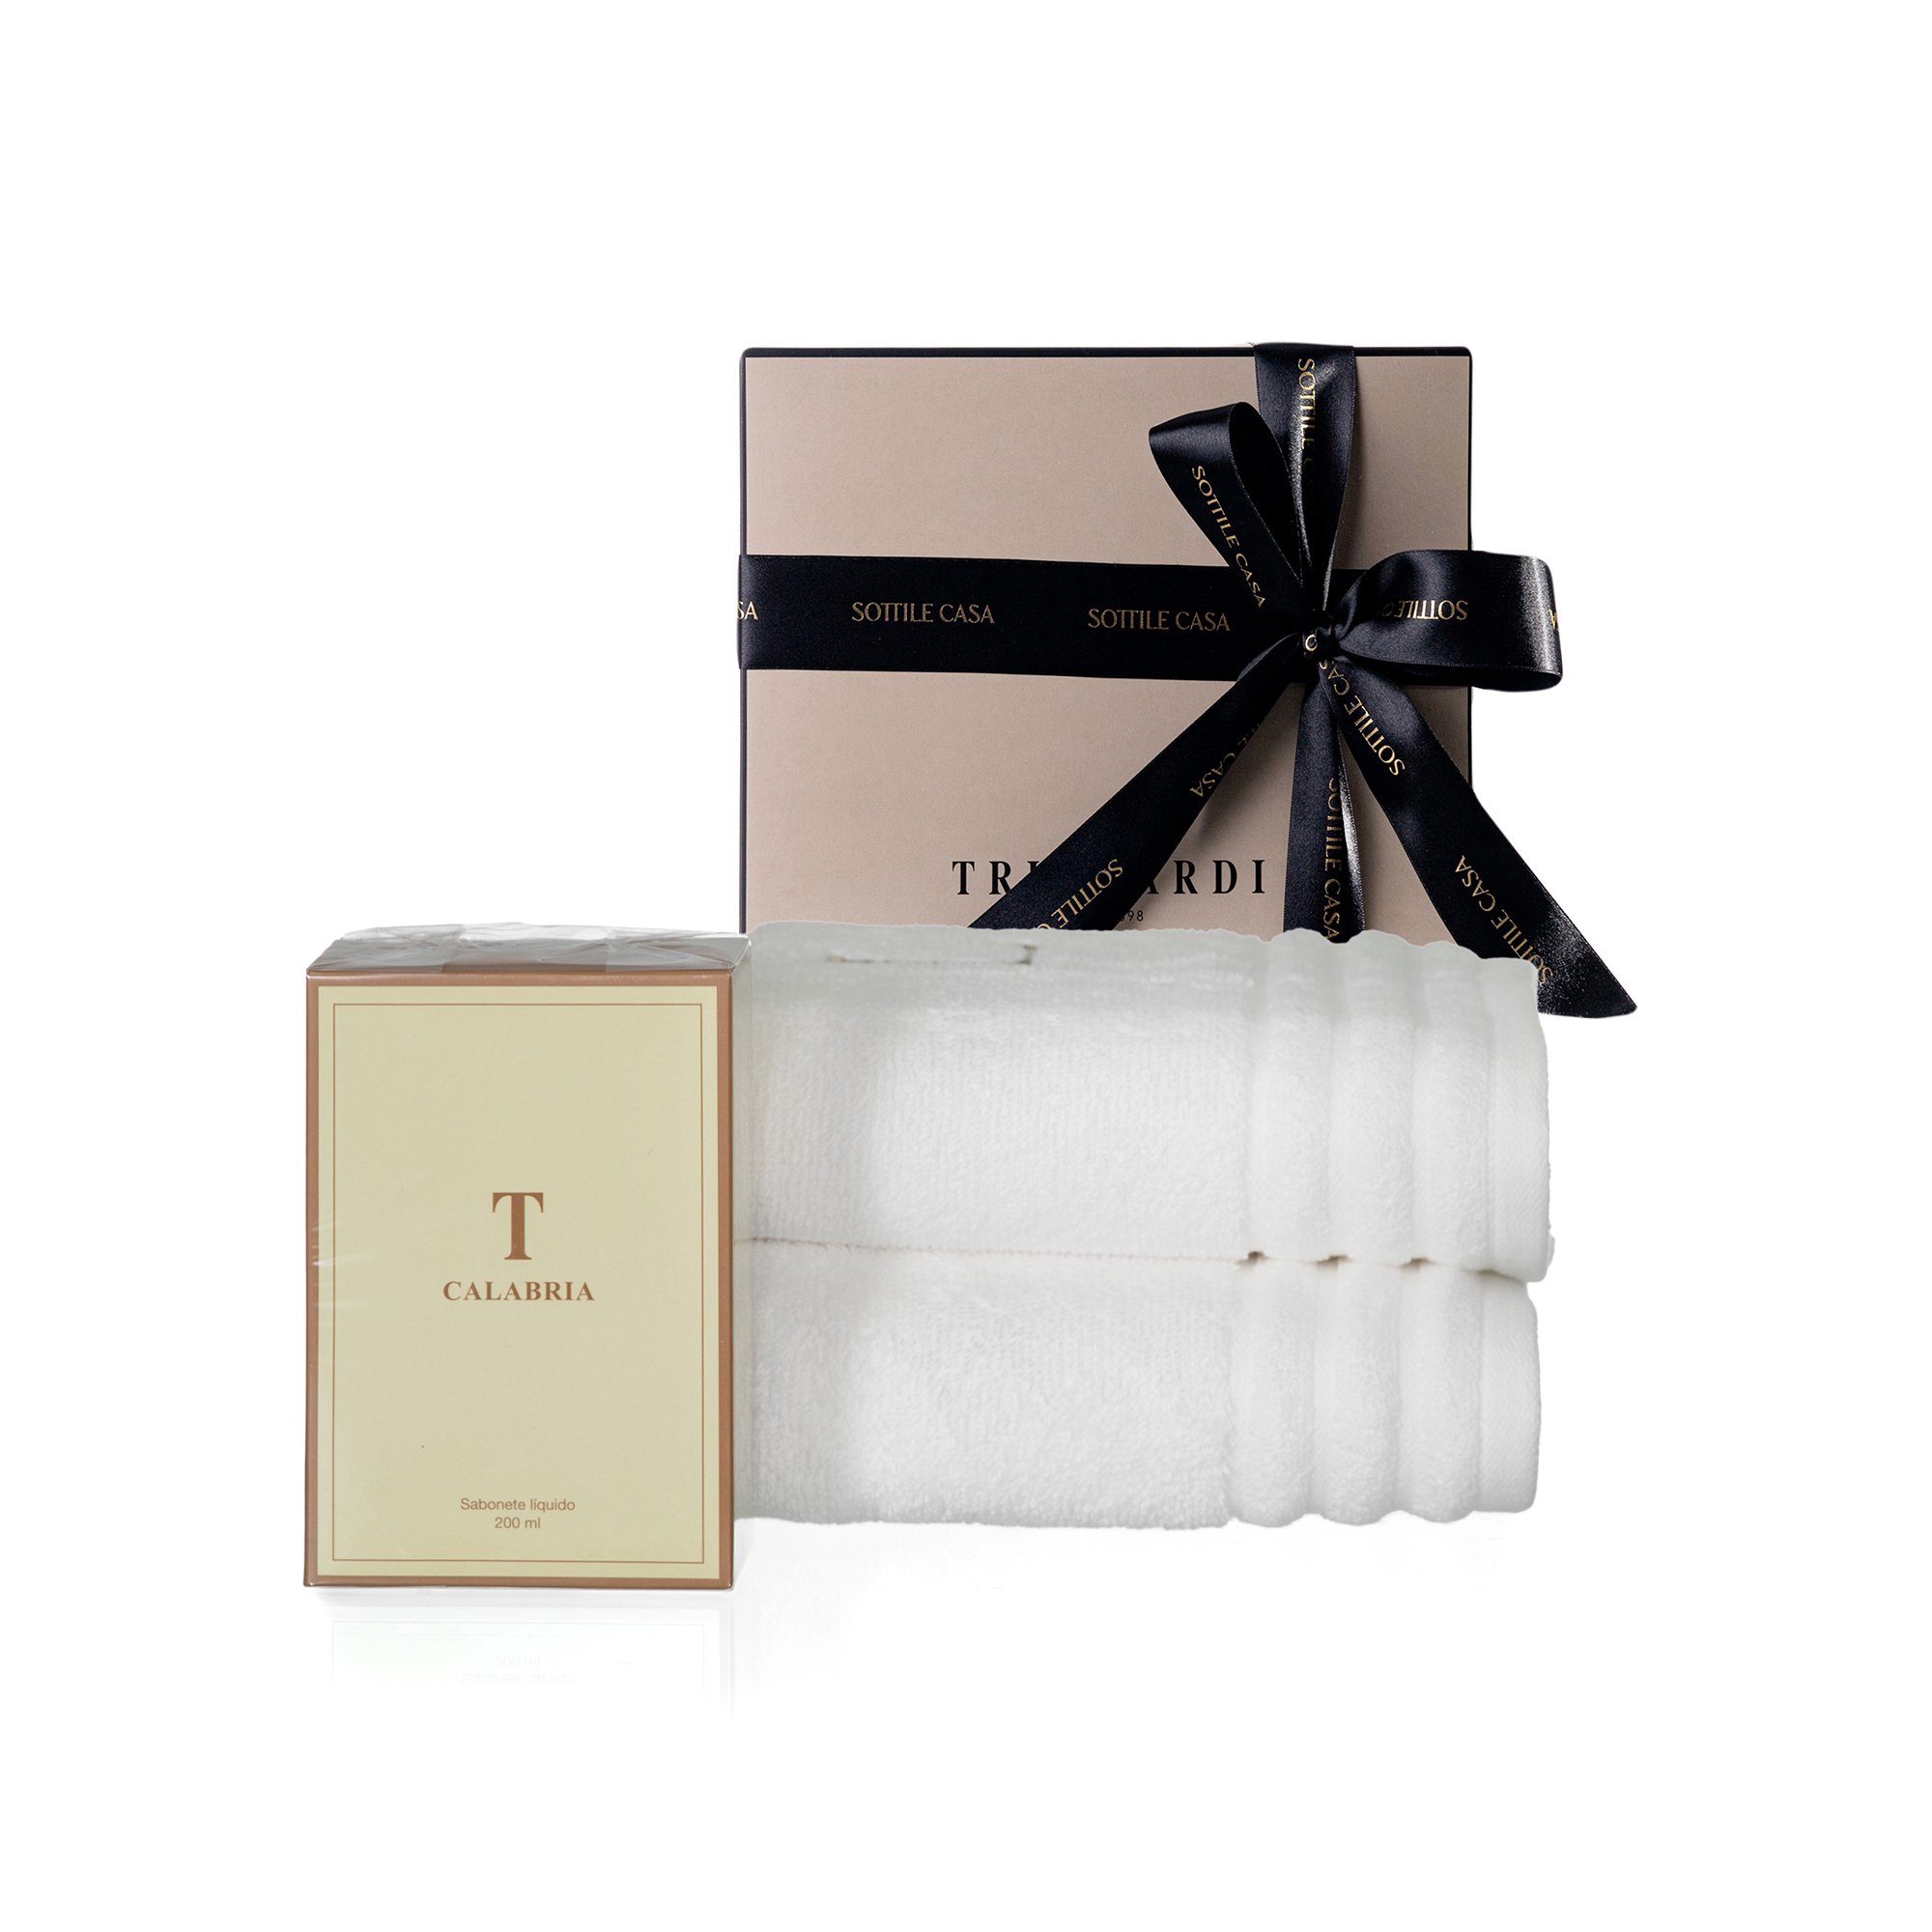 kit jogo 2 toalhas de lavabo 100 algodao trussardi imperiale branco com sabonete liquido trussardi 200ml calabria com caixa de presente 2